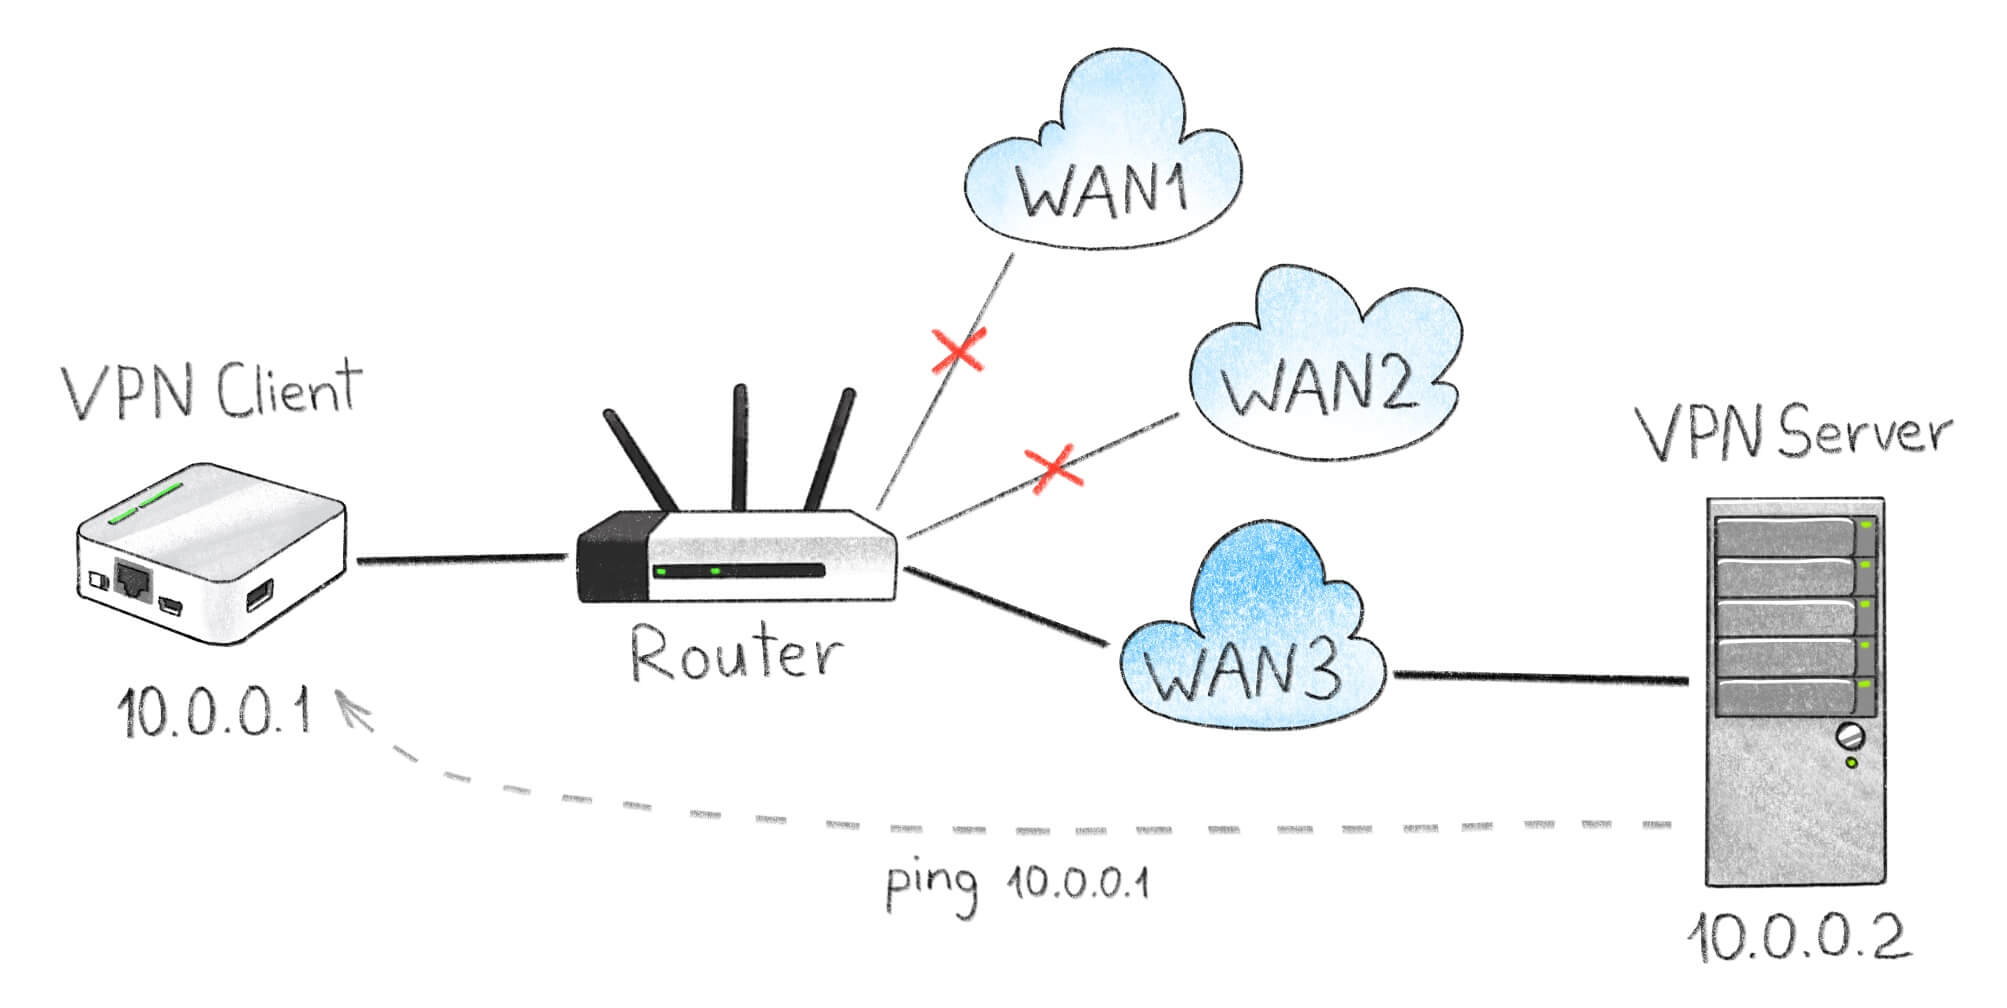 Diseño de banco de pruebas. El enrutador MR3020 actúa como una computadora con un cliente VPN en ejecución. El servidor remoto está monitoreando la dirección IP del cliente VPN.